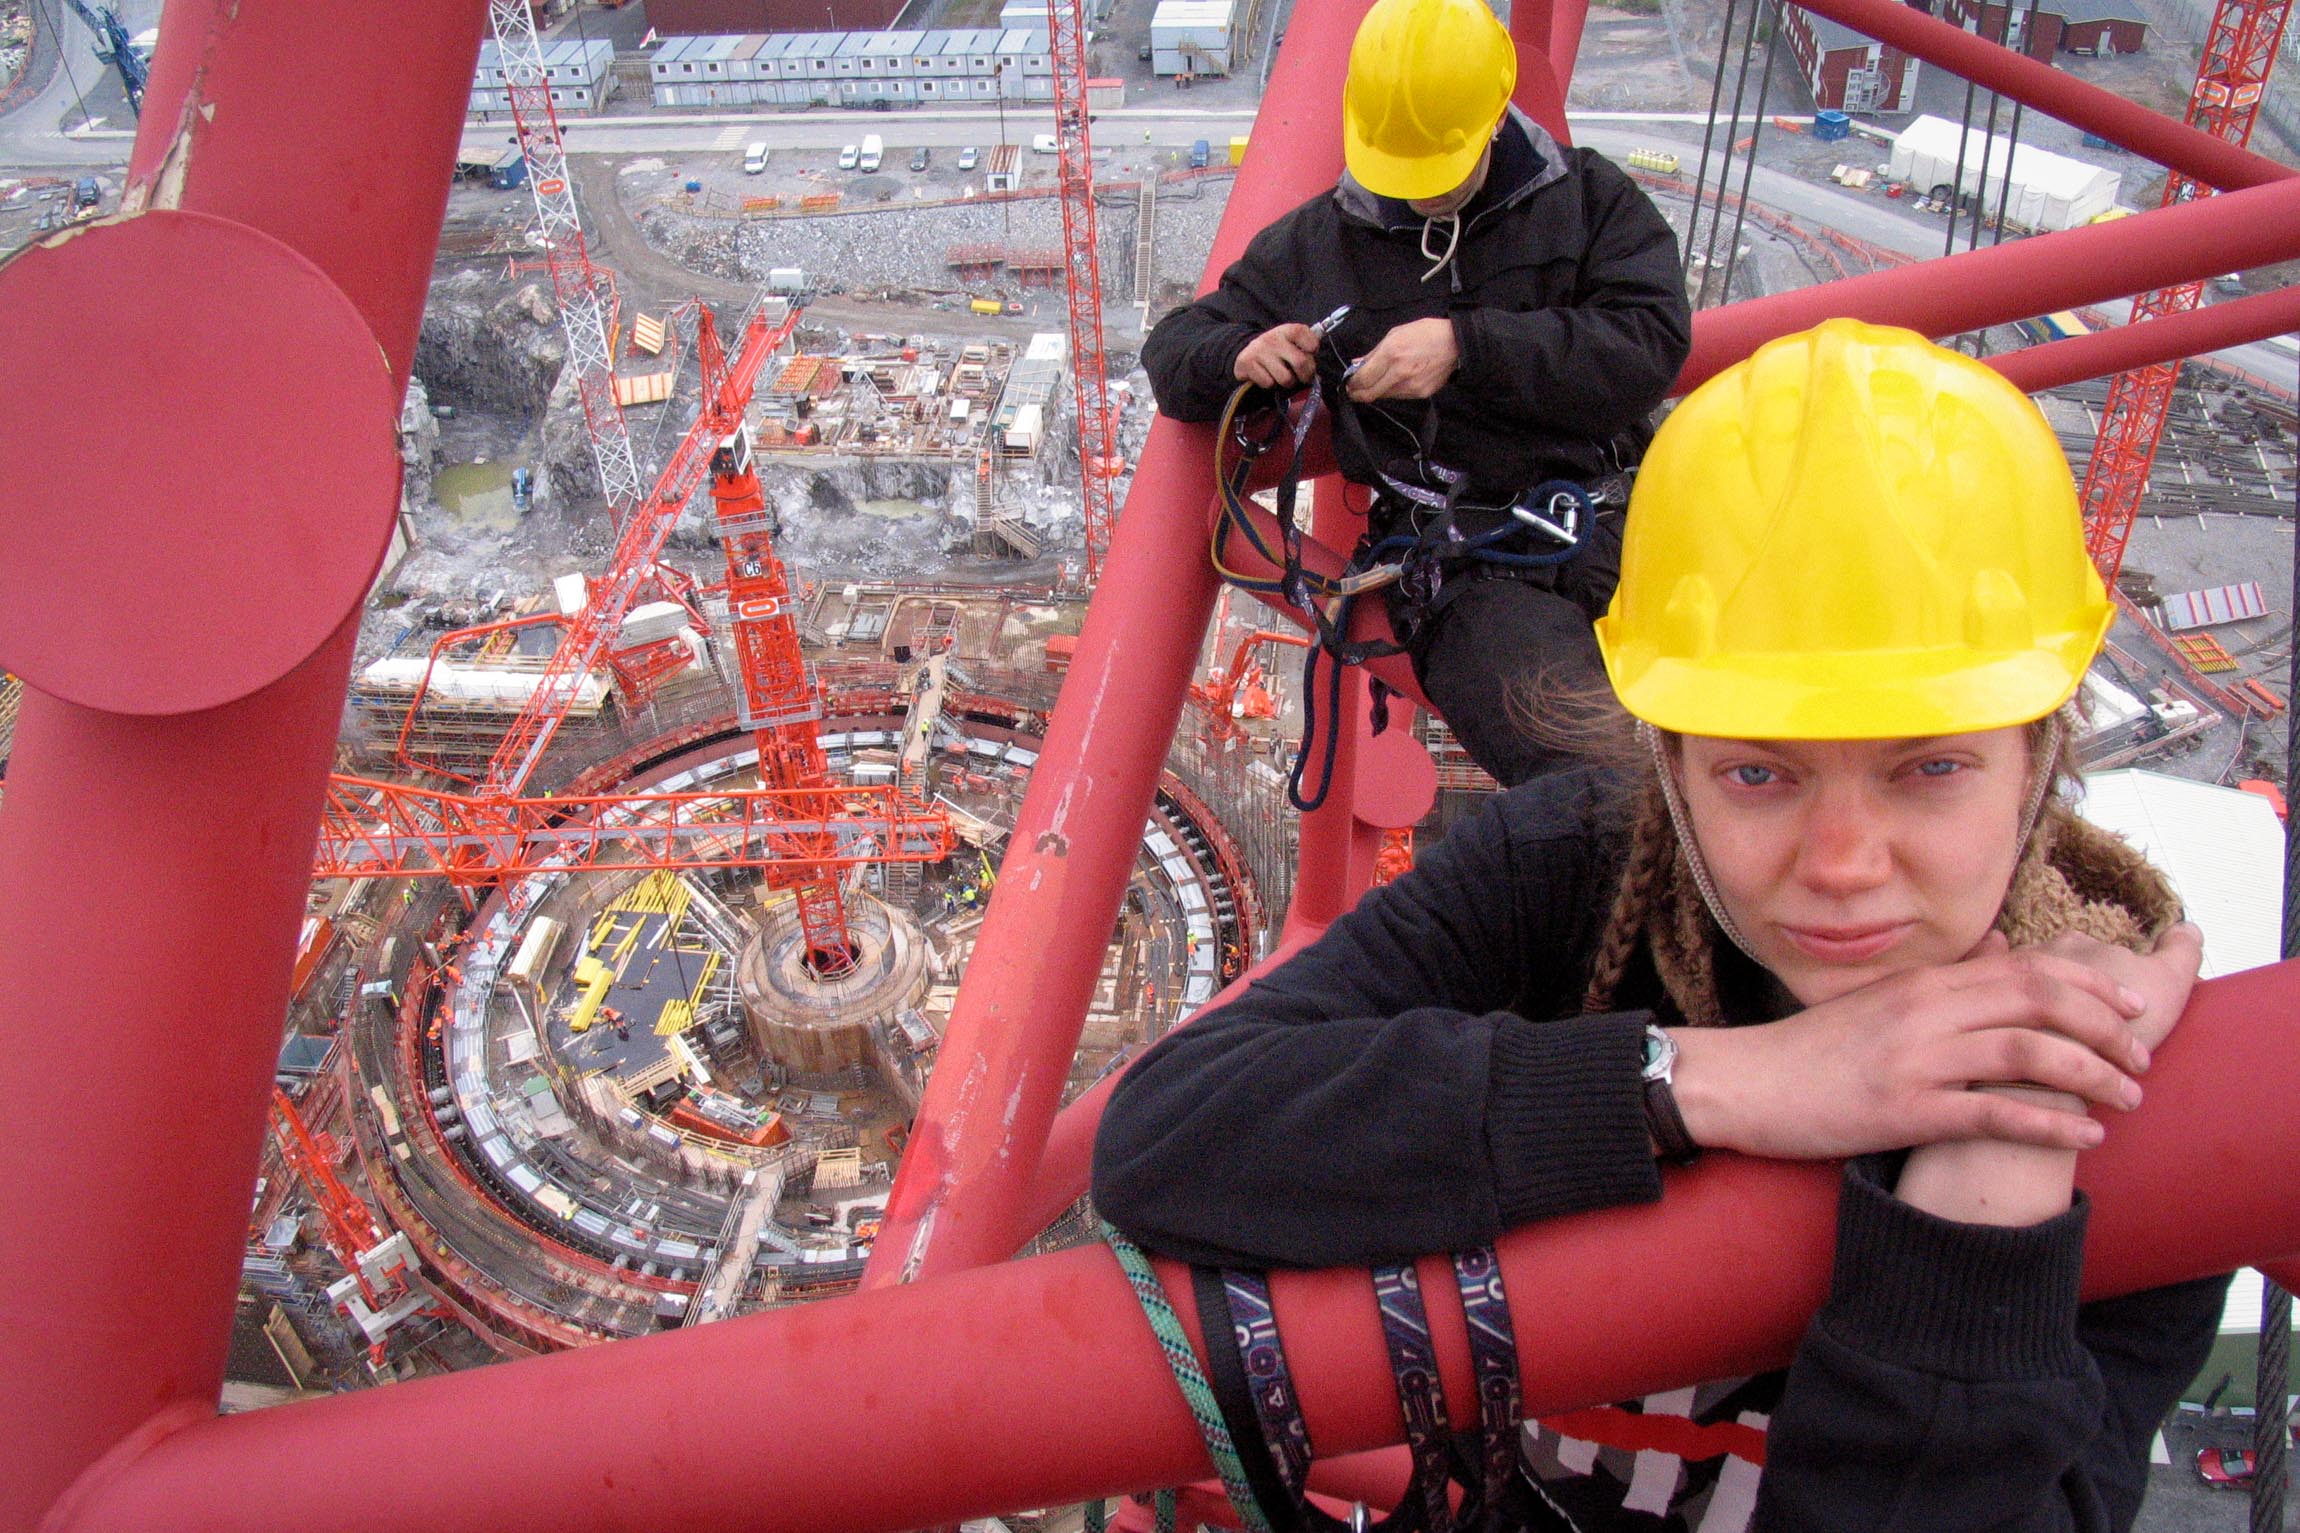 Activists climb crane at Nuclear Protest